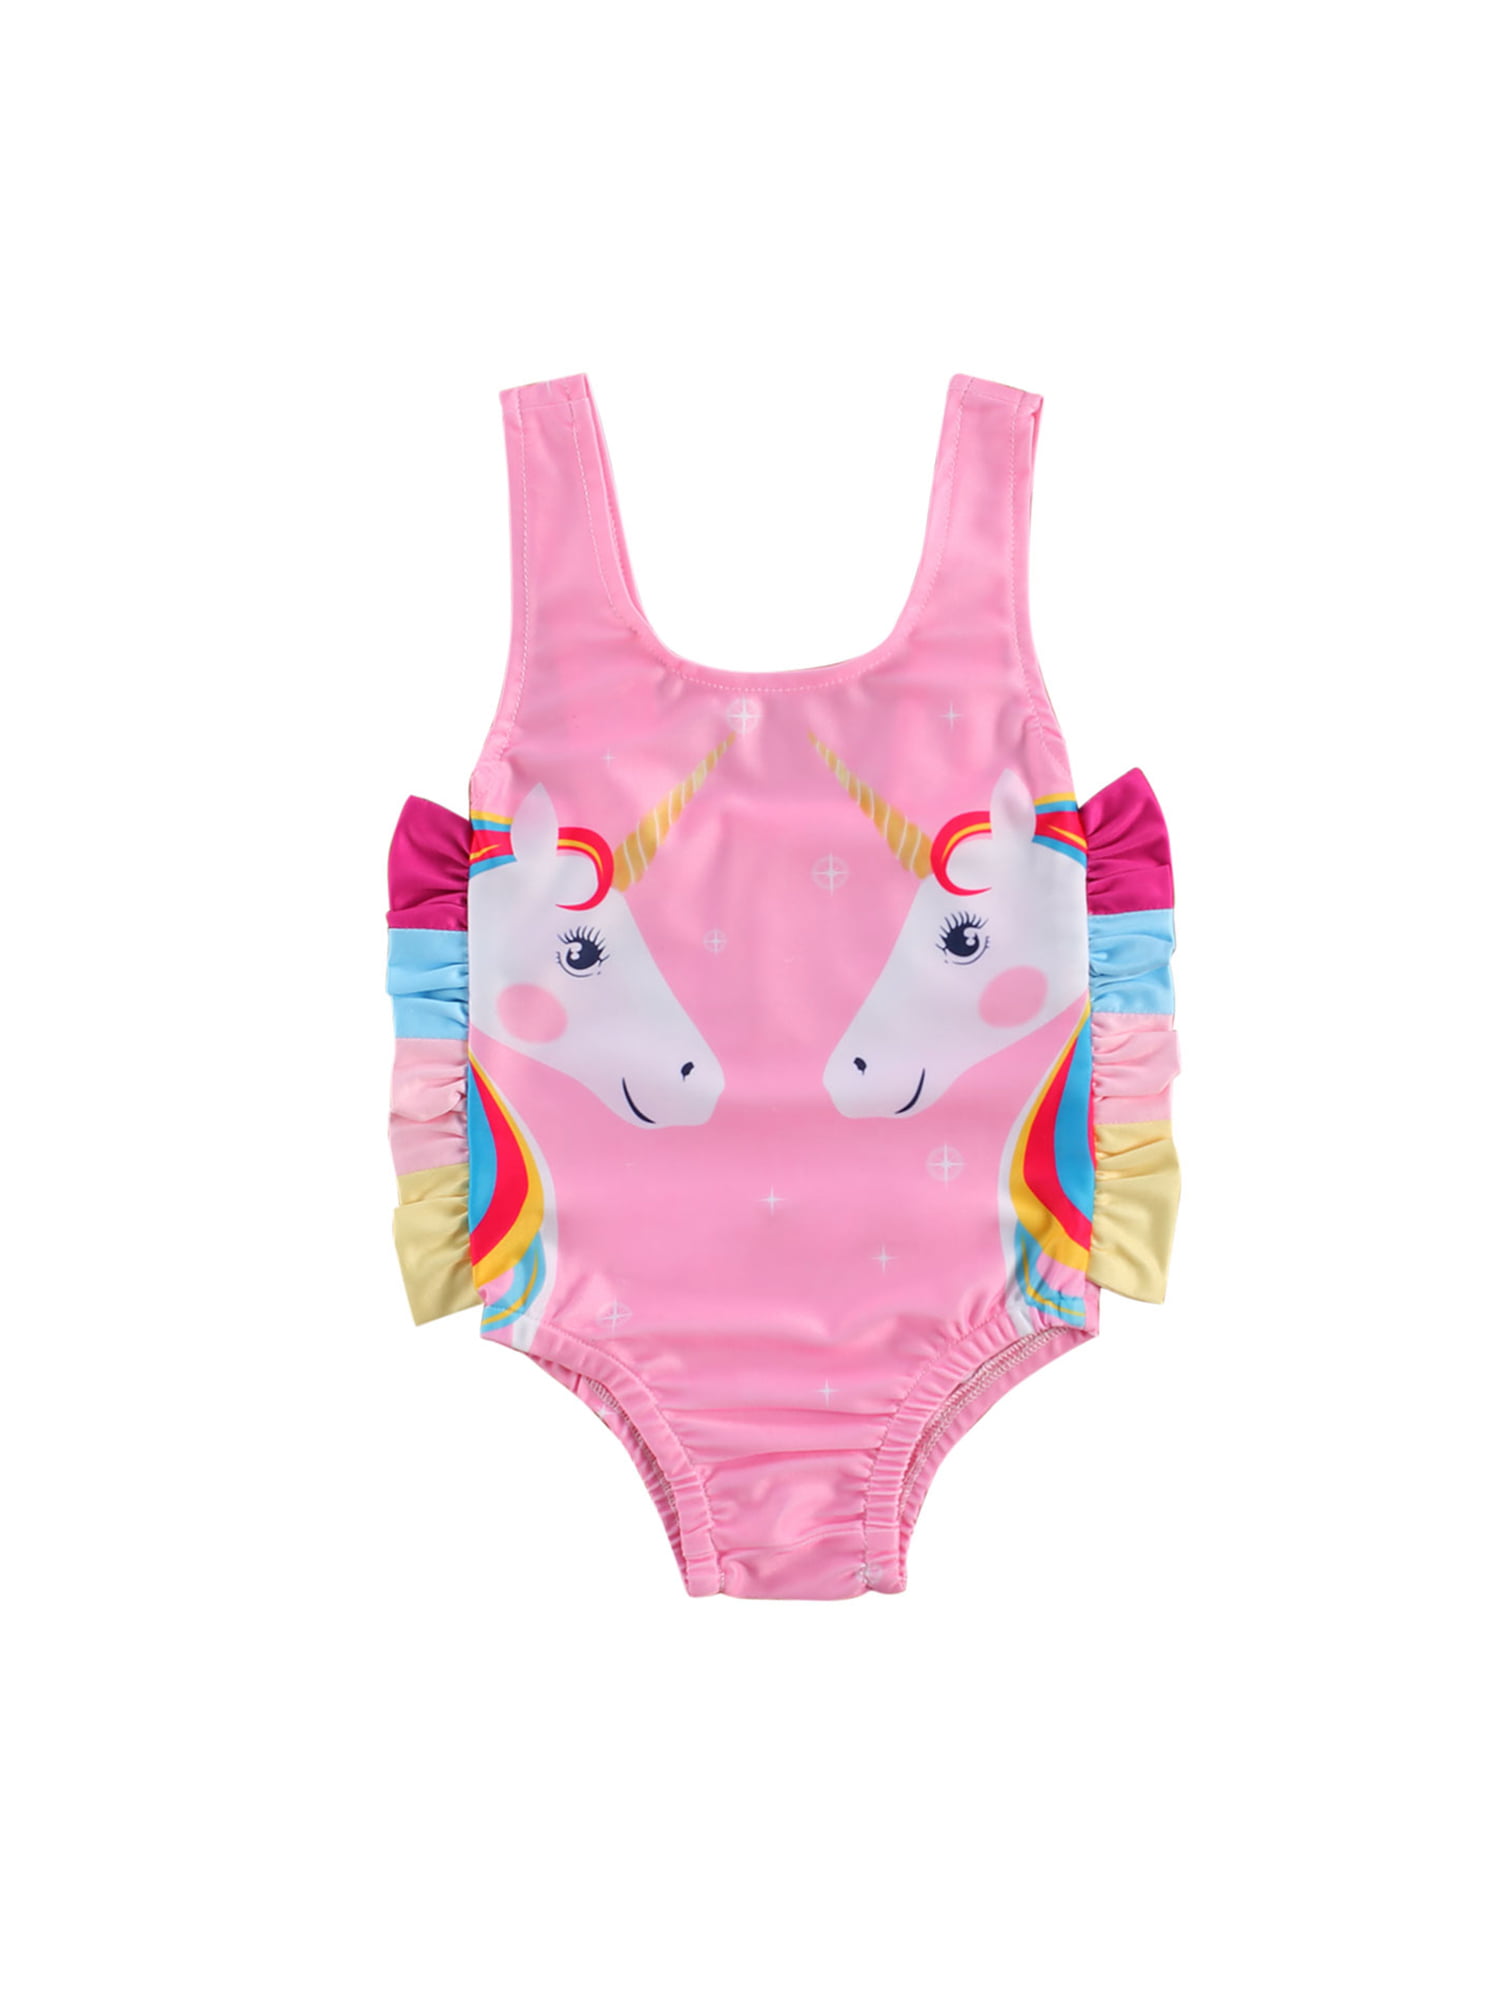 Newborn Baby Girl Pink Unicorn Swimwear Sleeveless Ruffle One Piece Swimsuit Holiday Beachwear 